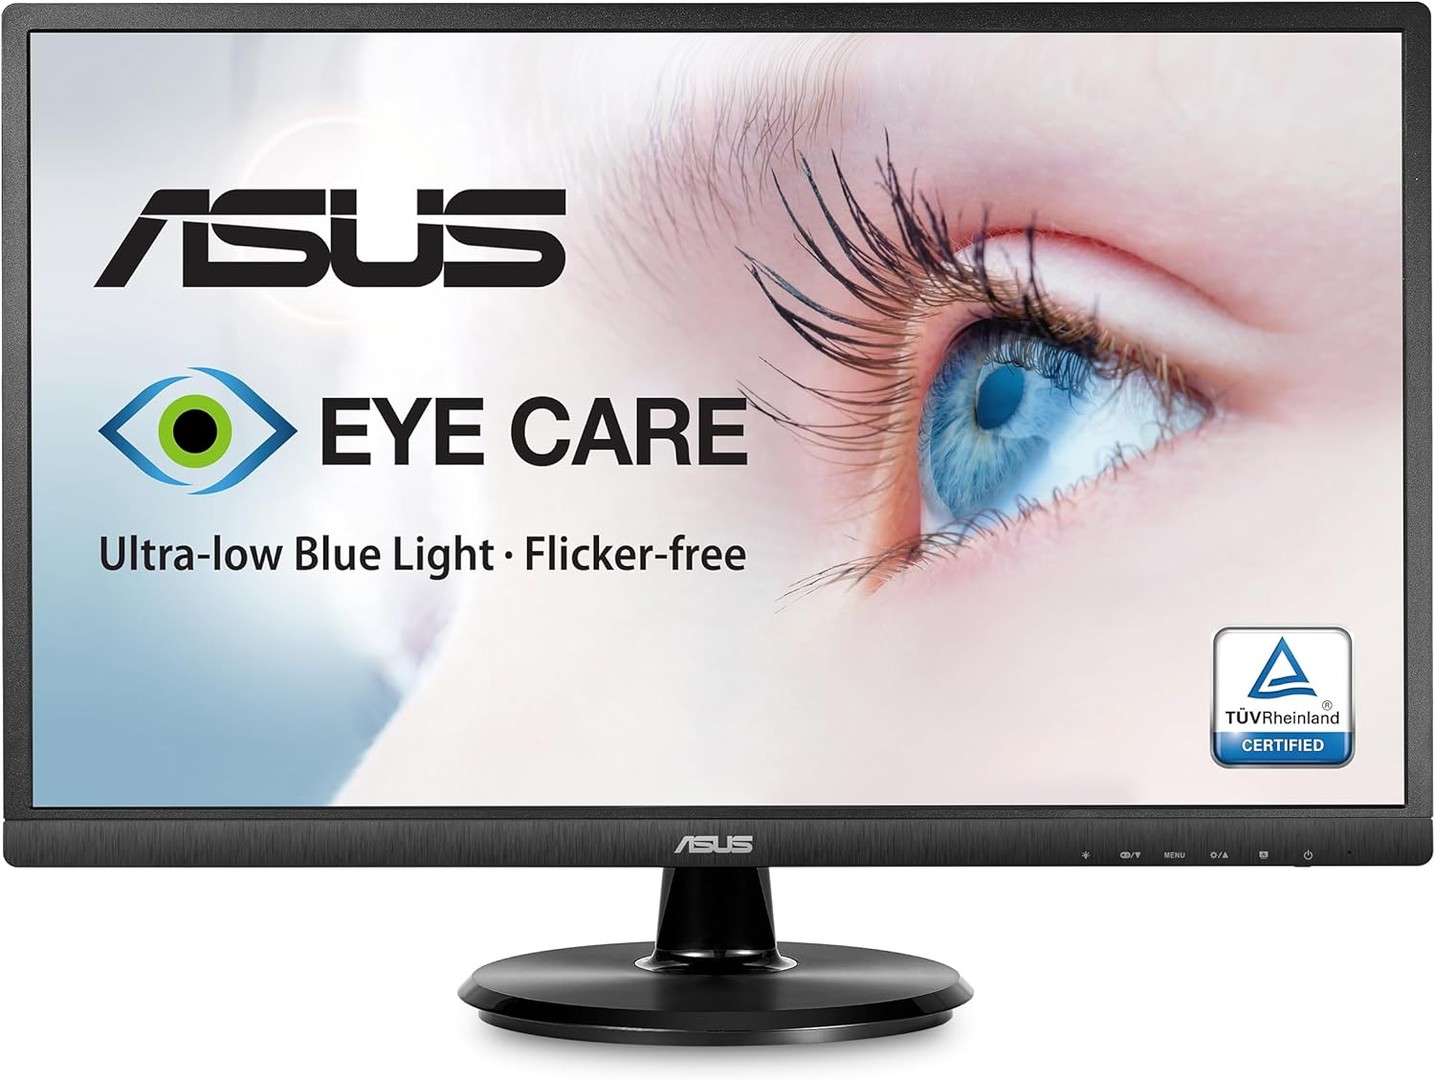 computadoras y laptops - ASUS Monitor Full HD de 24 Pulgadas 1080p, HDMI, VGA, cuidado ocular 1